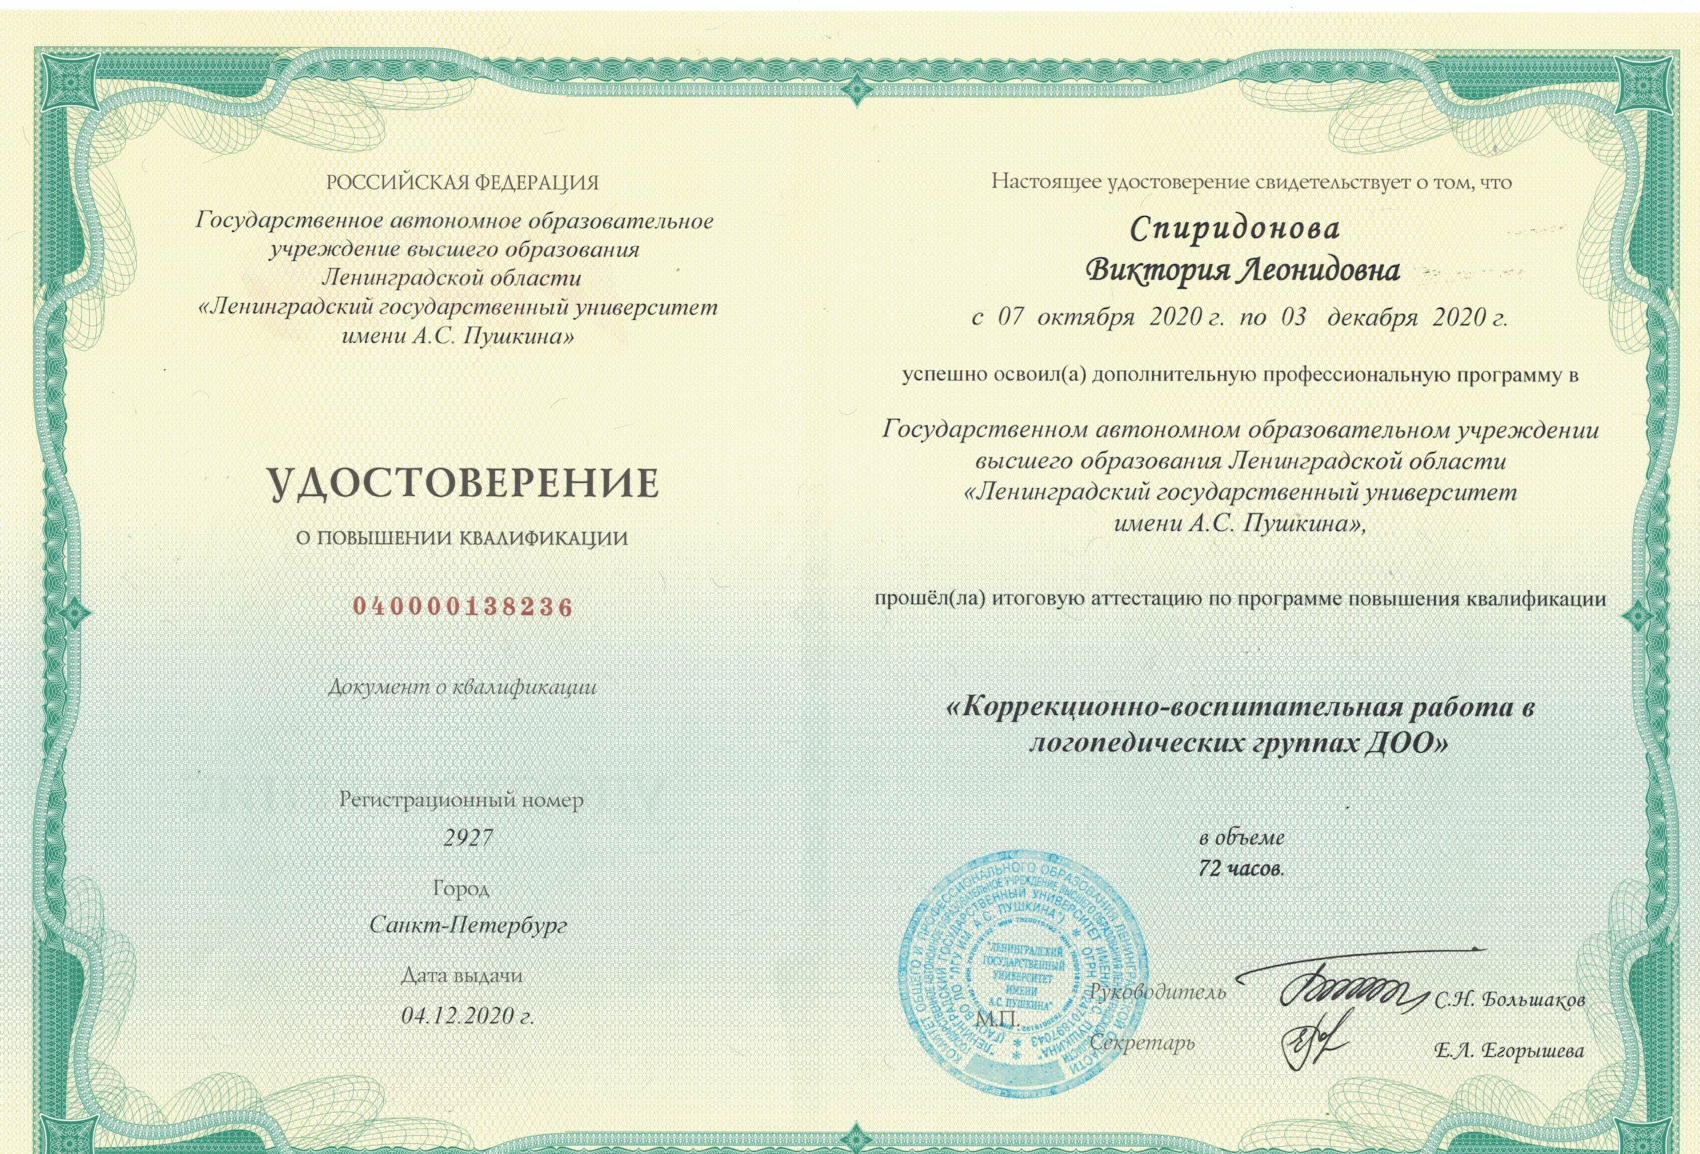 Сертификат Спиридонова ВЛ22012021 page 0001